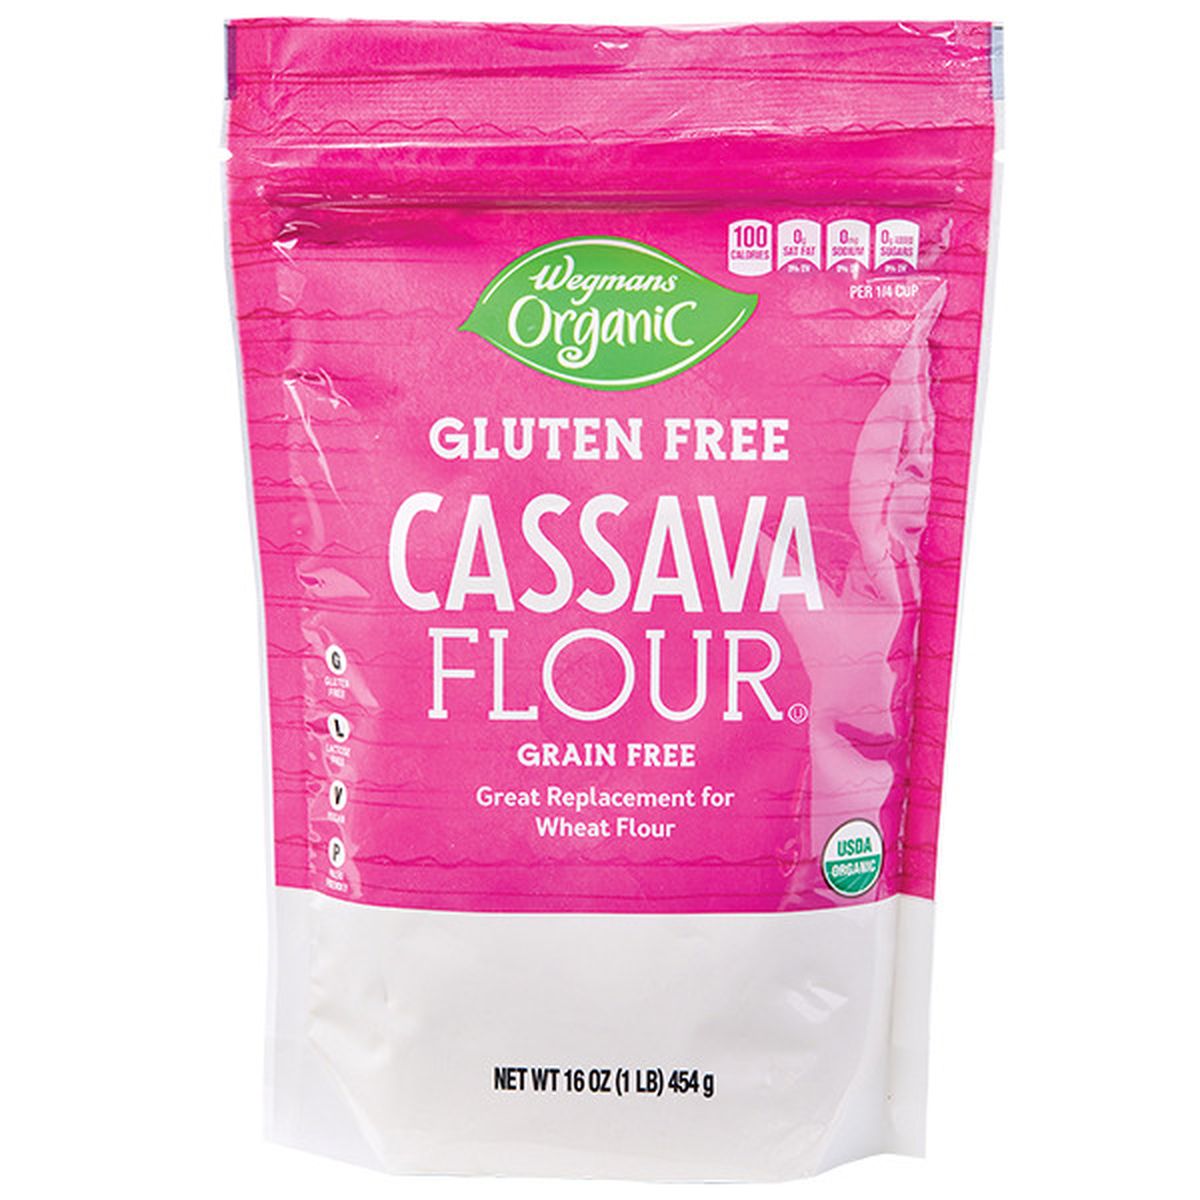 Calories in Wegmans Organic Gluten Free Cassava Flour